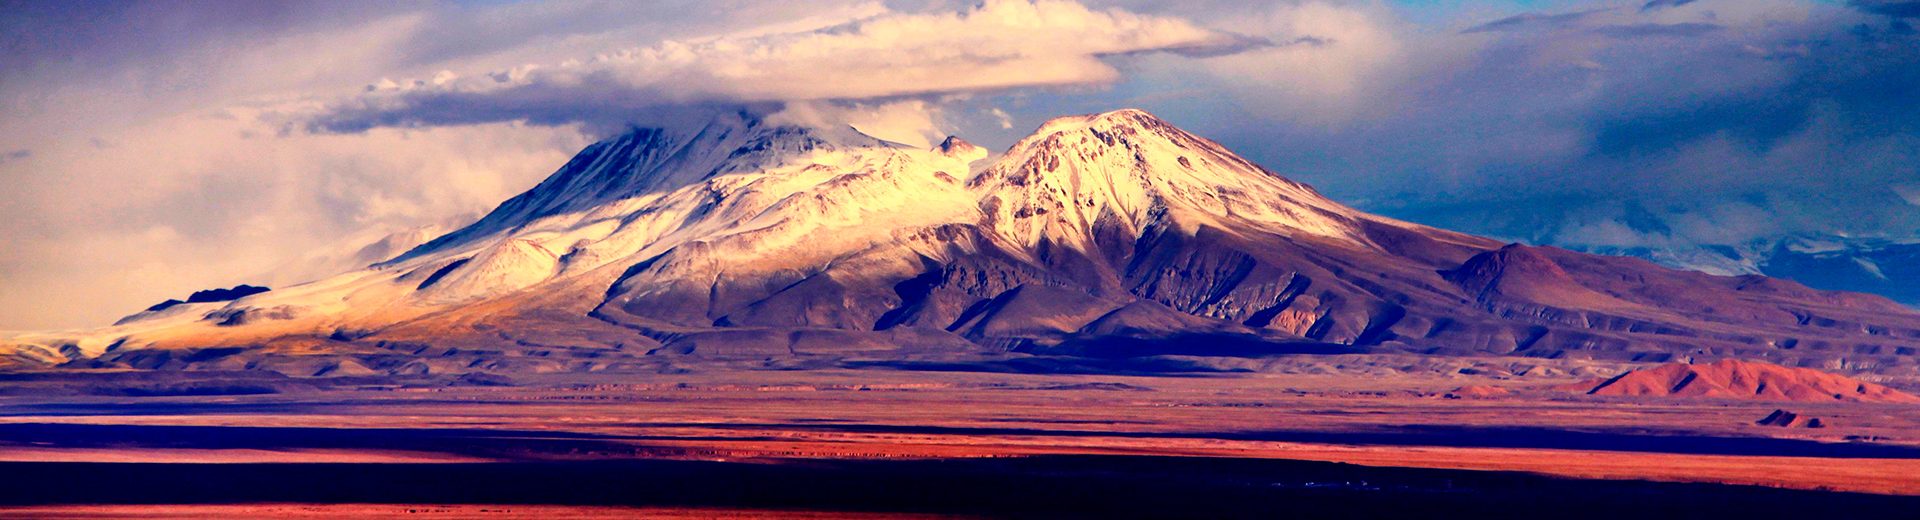 Deserto de Atacama: O deserto mais alto do mundo surpreende com suas belas paisagens